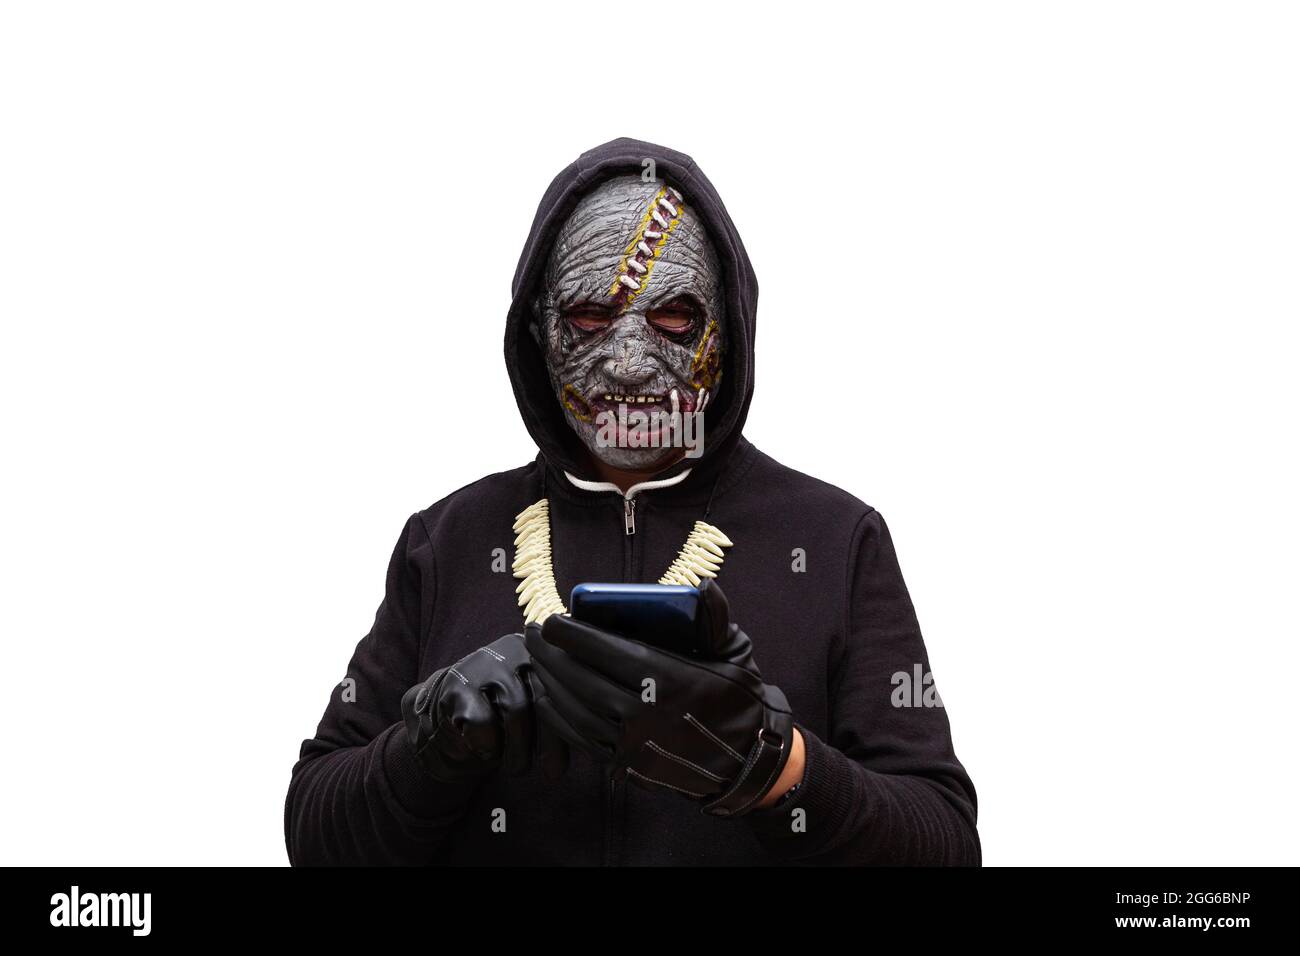 Un uomo travestito in una maschera zombie che indossa una felpa con cappuccio nera sta toccando il touch screen di un telefono cellulare. Foto Stock